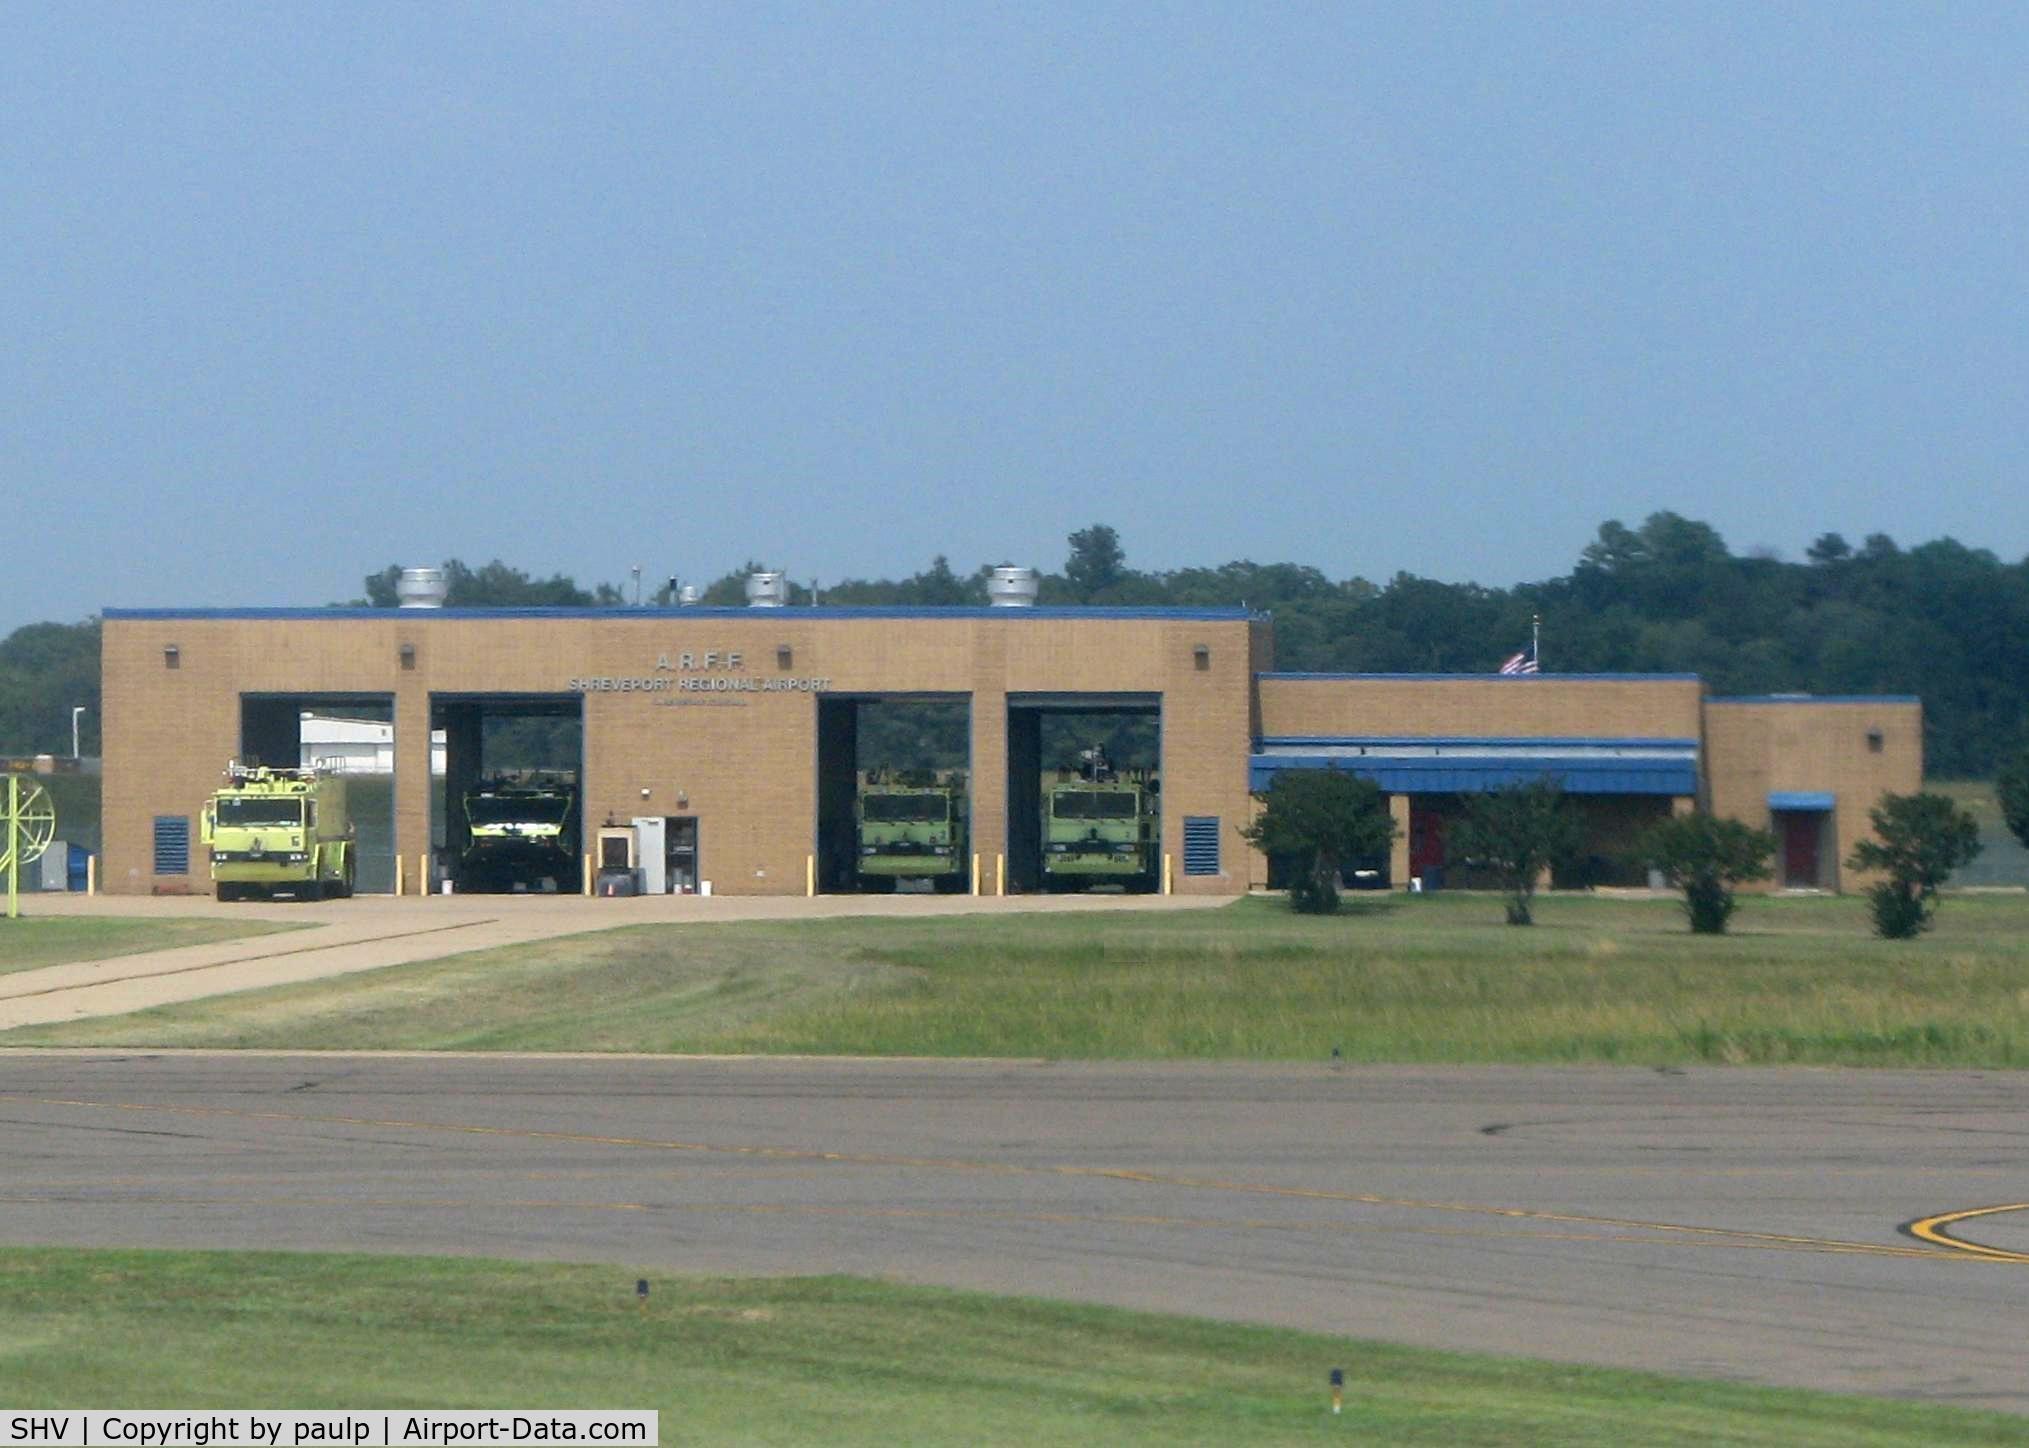 Shreveport Regional Airport (SHV) - Shreveport Fire Department Station #21 at Shreveport Regional.